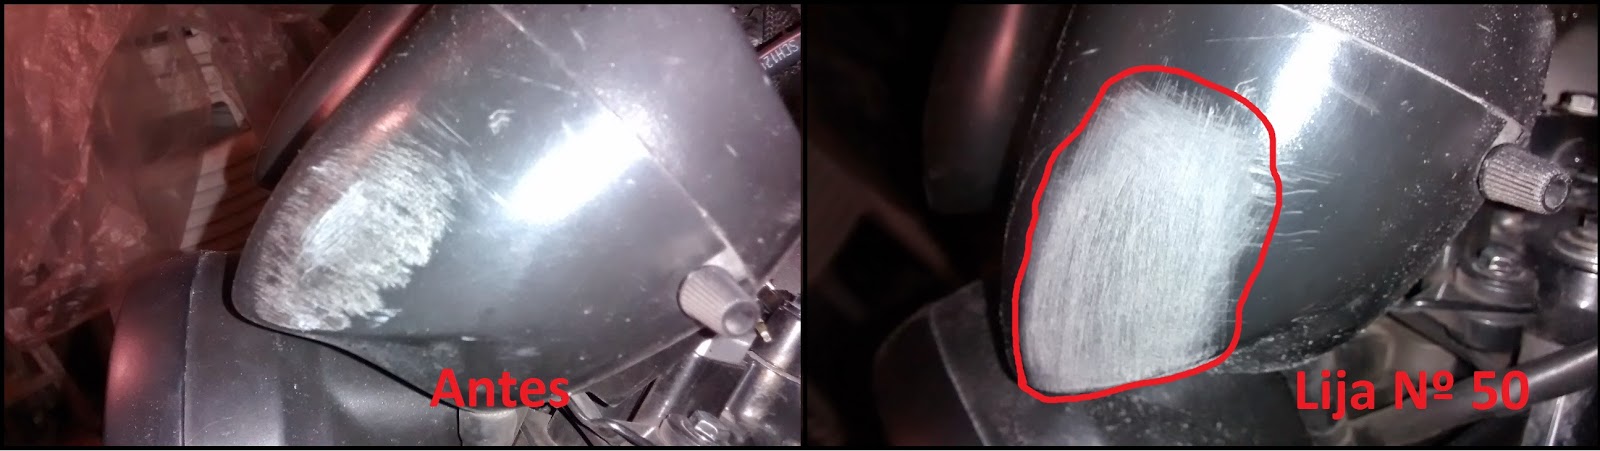 Cómo reparar arañazos en plasticos de la moto ⇨ Método casero